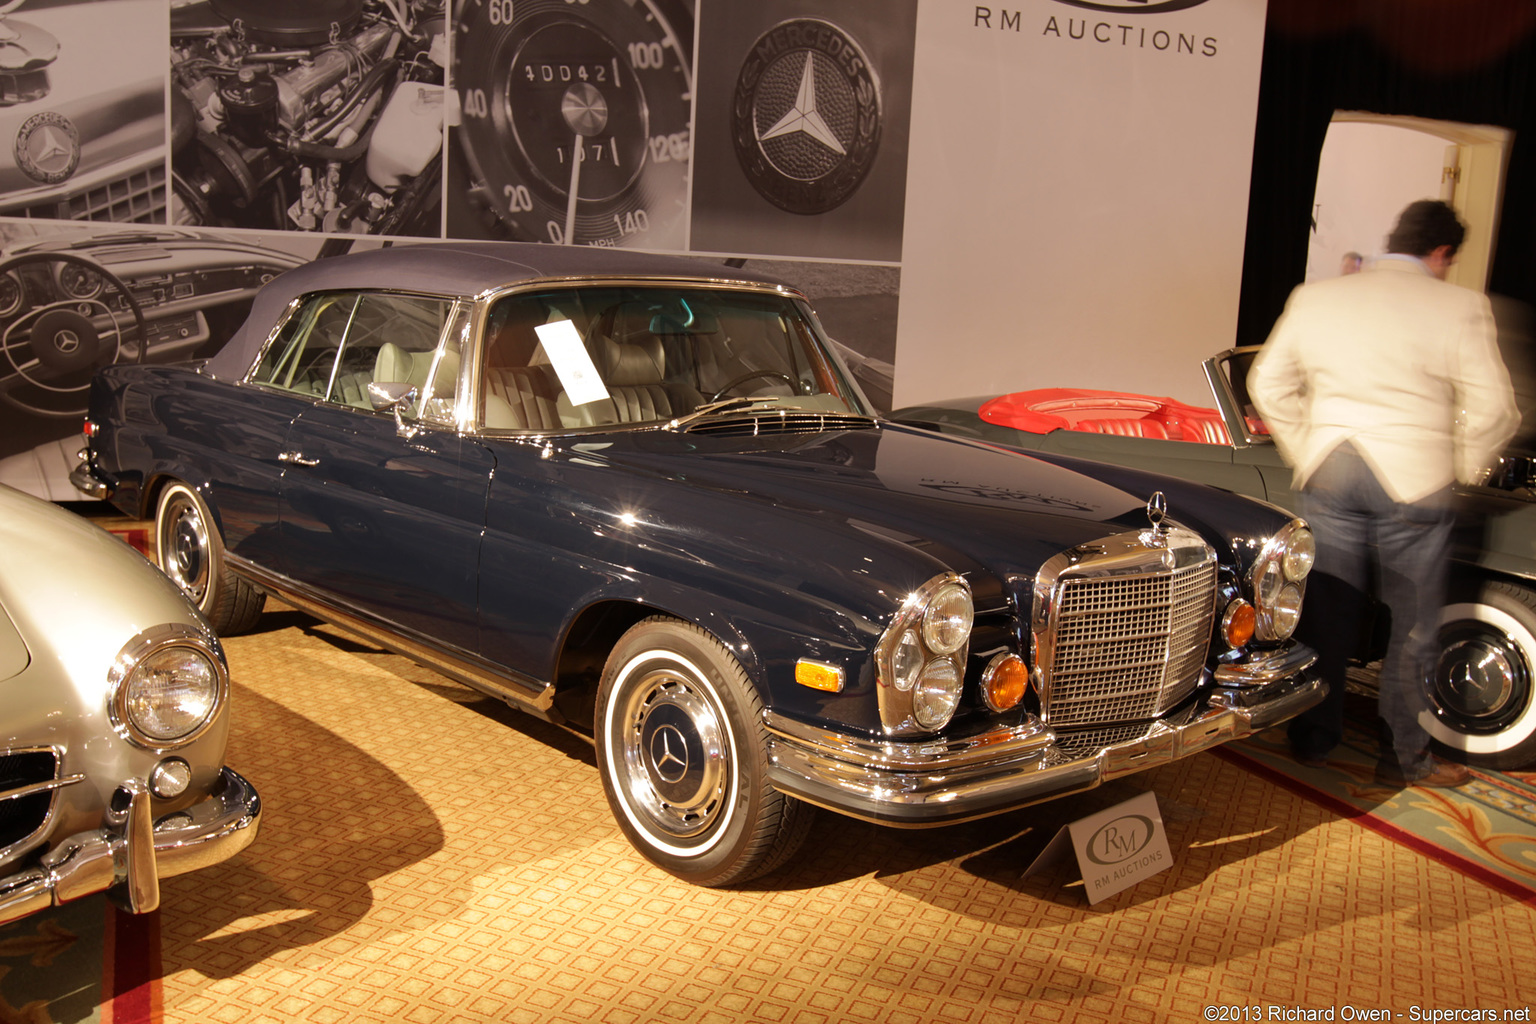 1969→1971 Mercedes-Benz 280 SE 3.5 Cabriolet